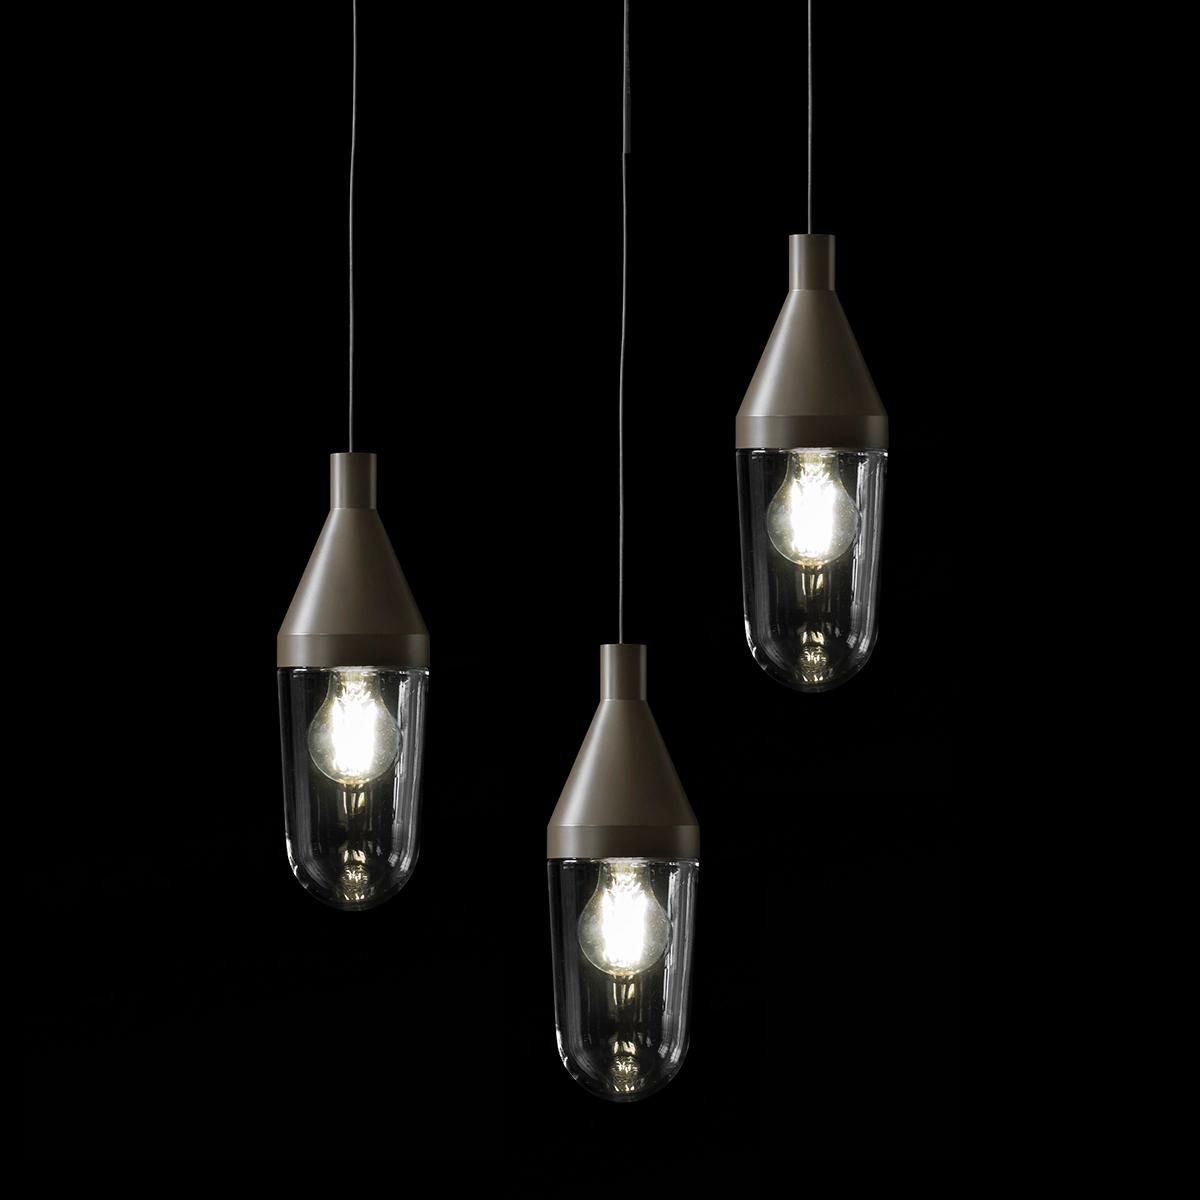 Lampe à suspension 'Niwa' conçue par Christophe Pillet en 2017. Lampe à suspension donnant une lumière diffuse. Structure en aluminium laqué, diffuseur en verre soufflé transparent. Fabriqué par Oluce, Italie.

Niwa est une lampe